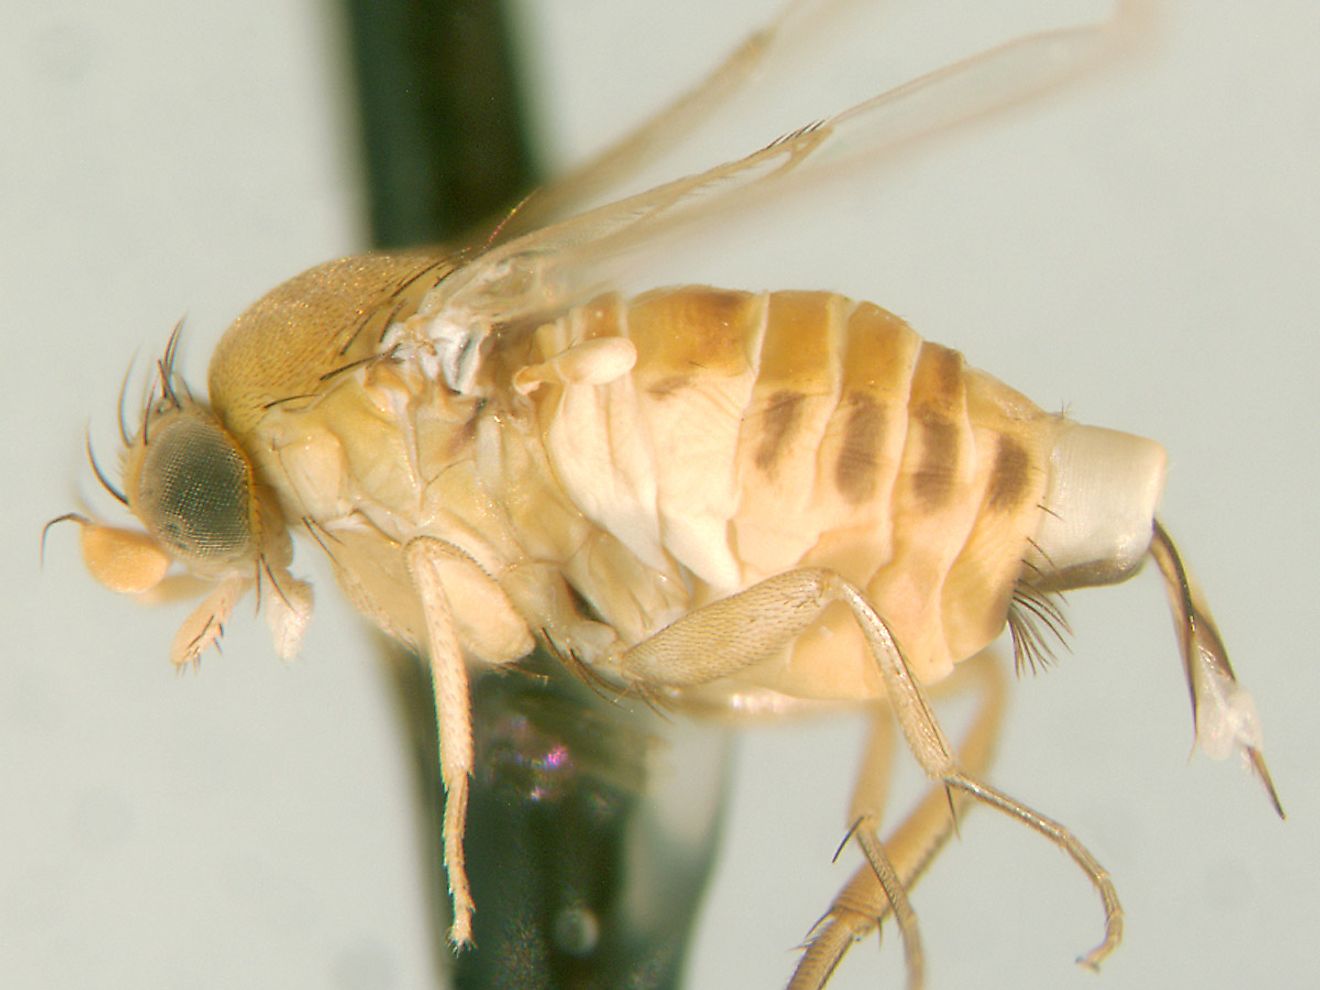 Zombie flies (Apocephalus borealis).